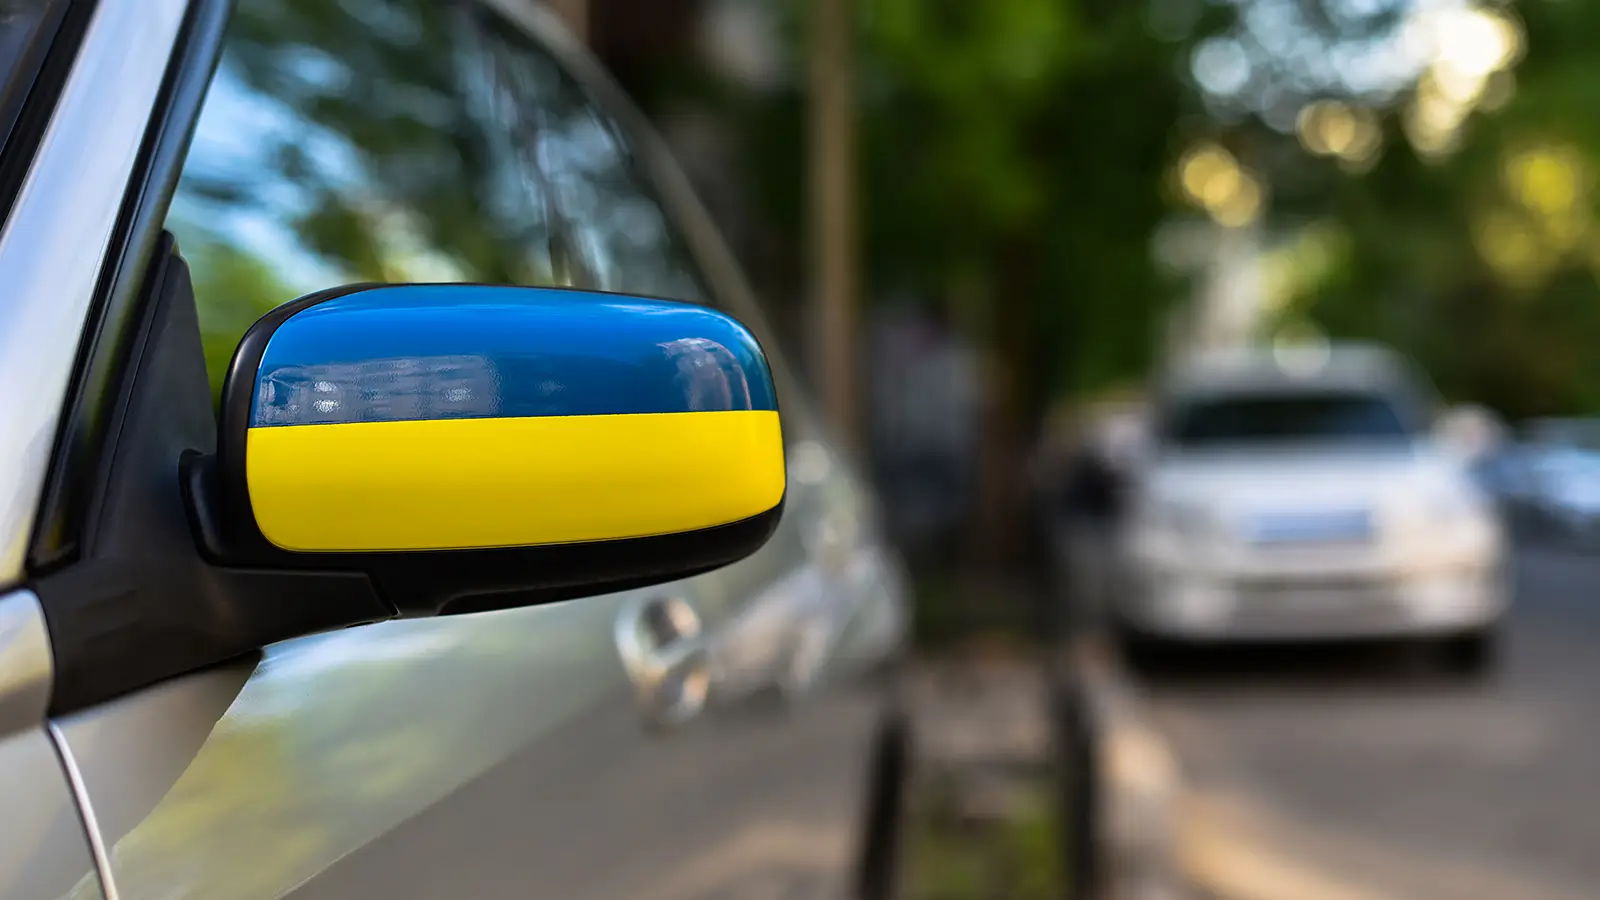 Pojištění vozidel při nehodě s vozidlem s ukrajinskou registrační značkou